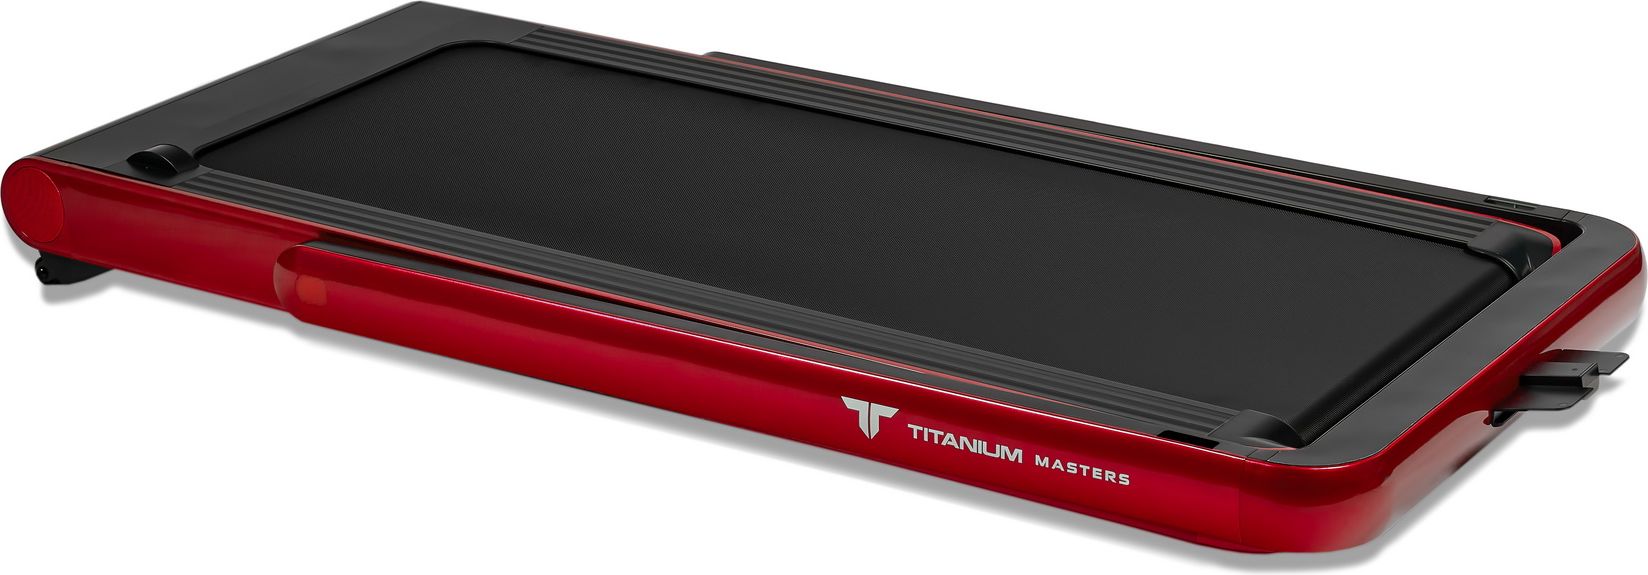 Беговая дорожка Titanium Masters Slimtech C20 красный